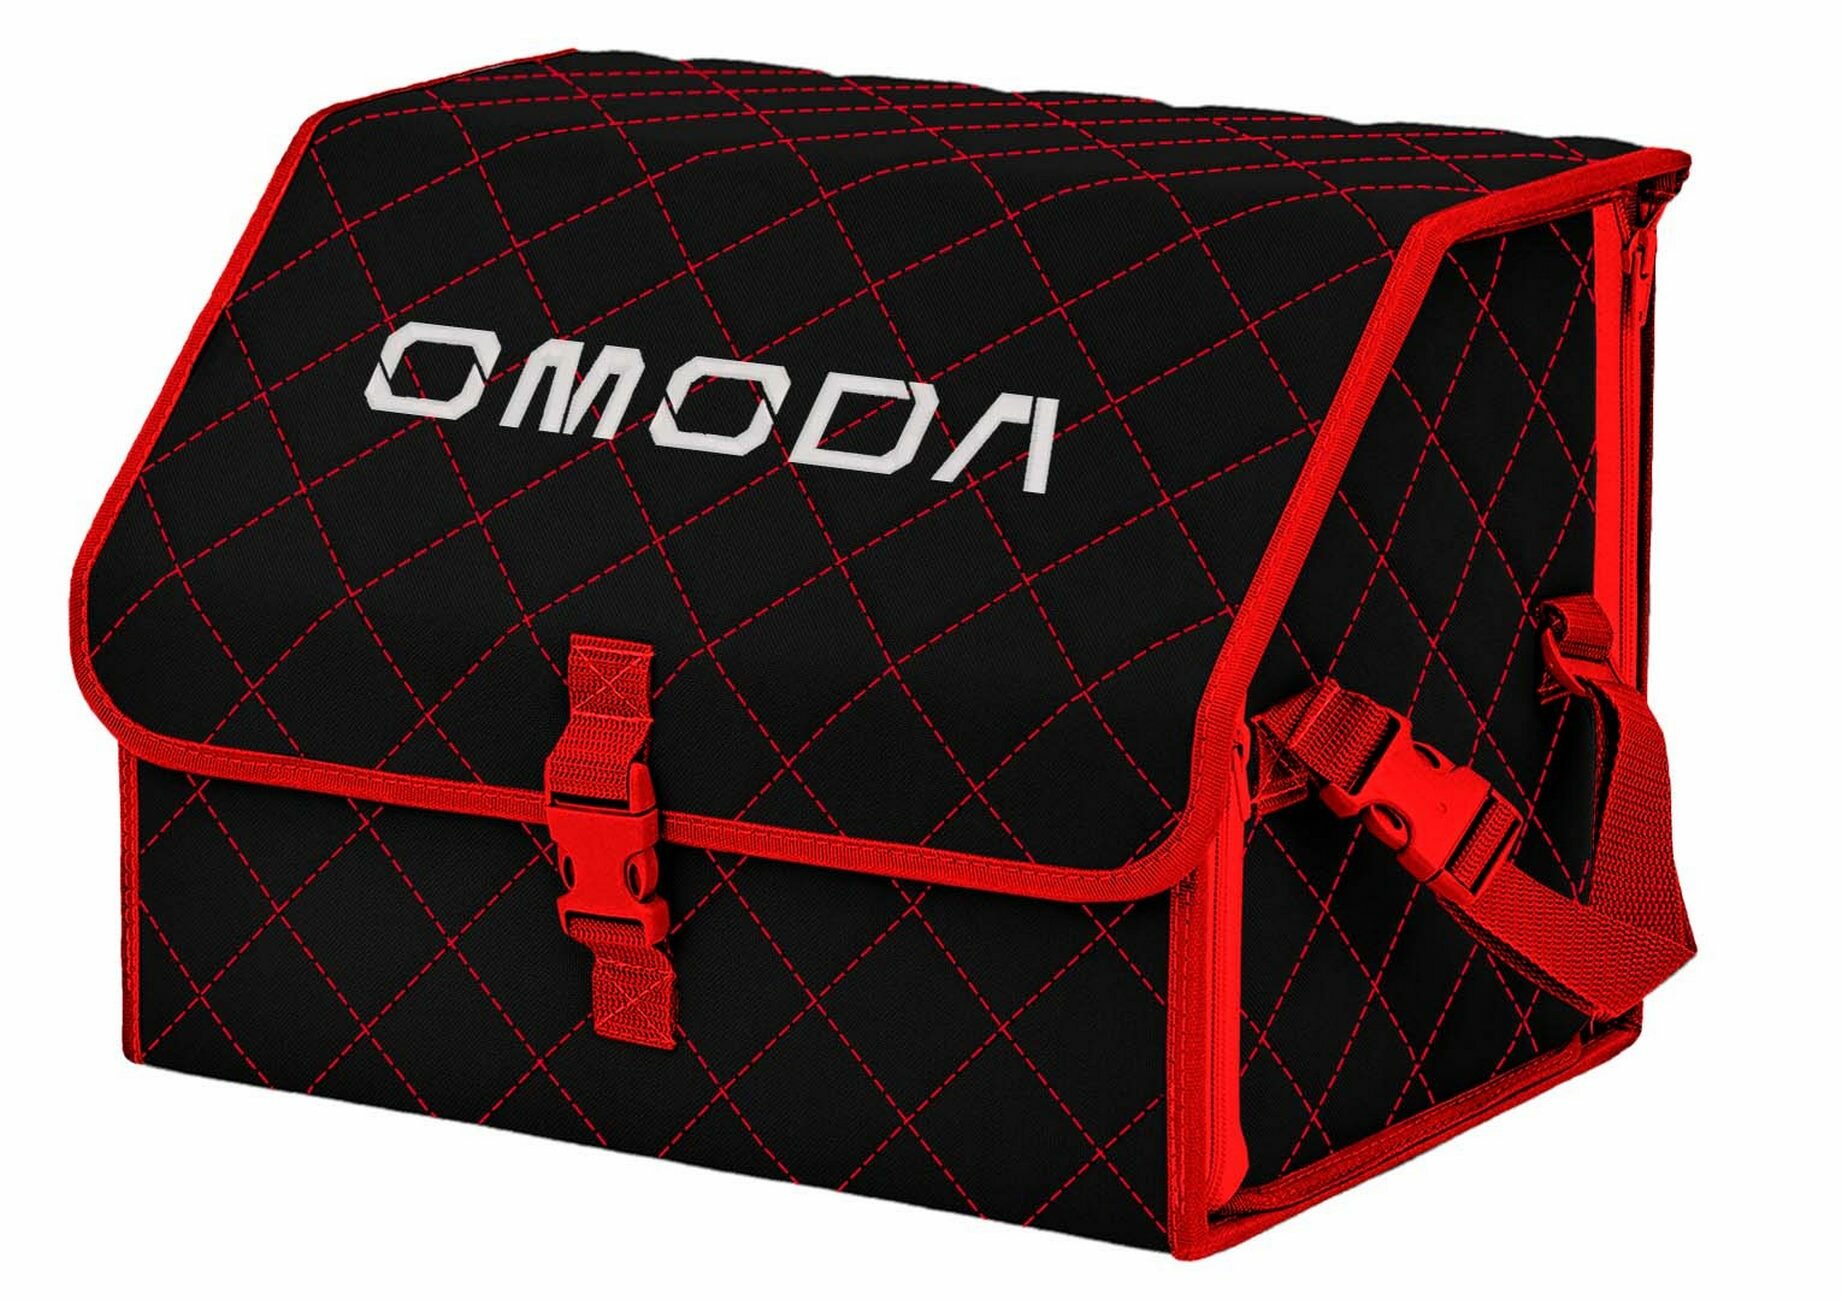 Органайзер-саквояж в багажник "Союз" (размер M). Цвет: черный с красной прострочкой Ромб и вышивкой Omoda (Омода).